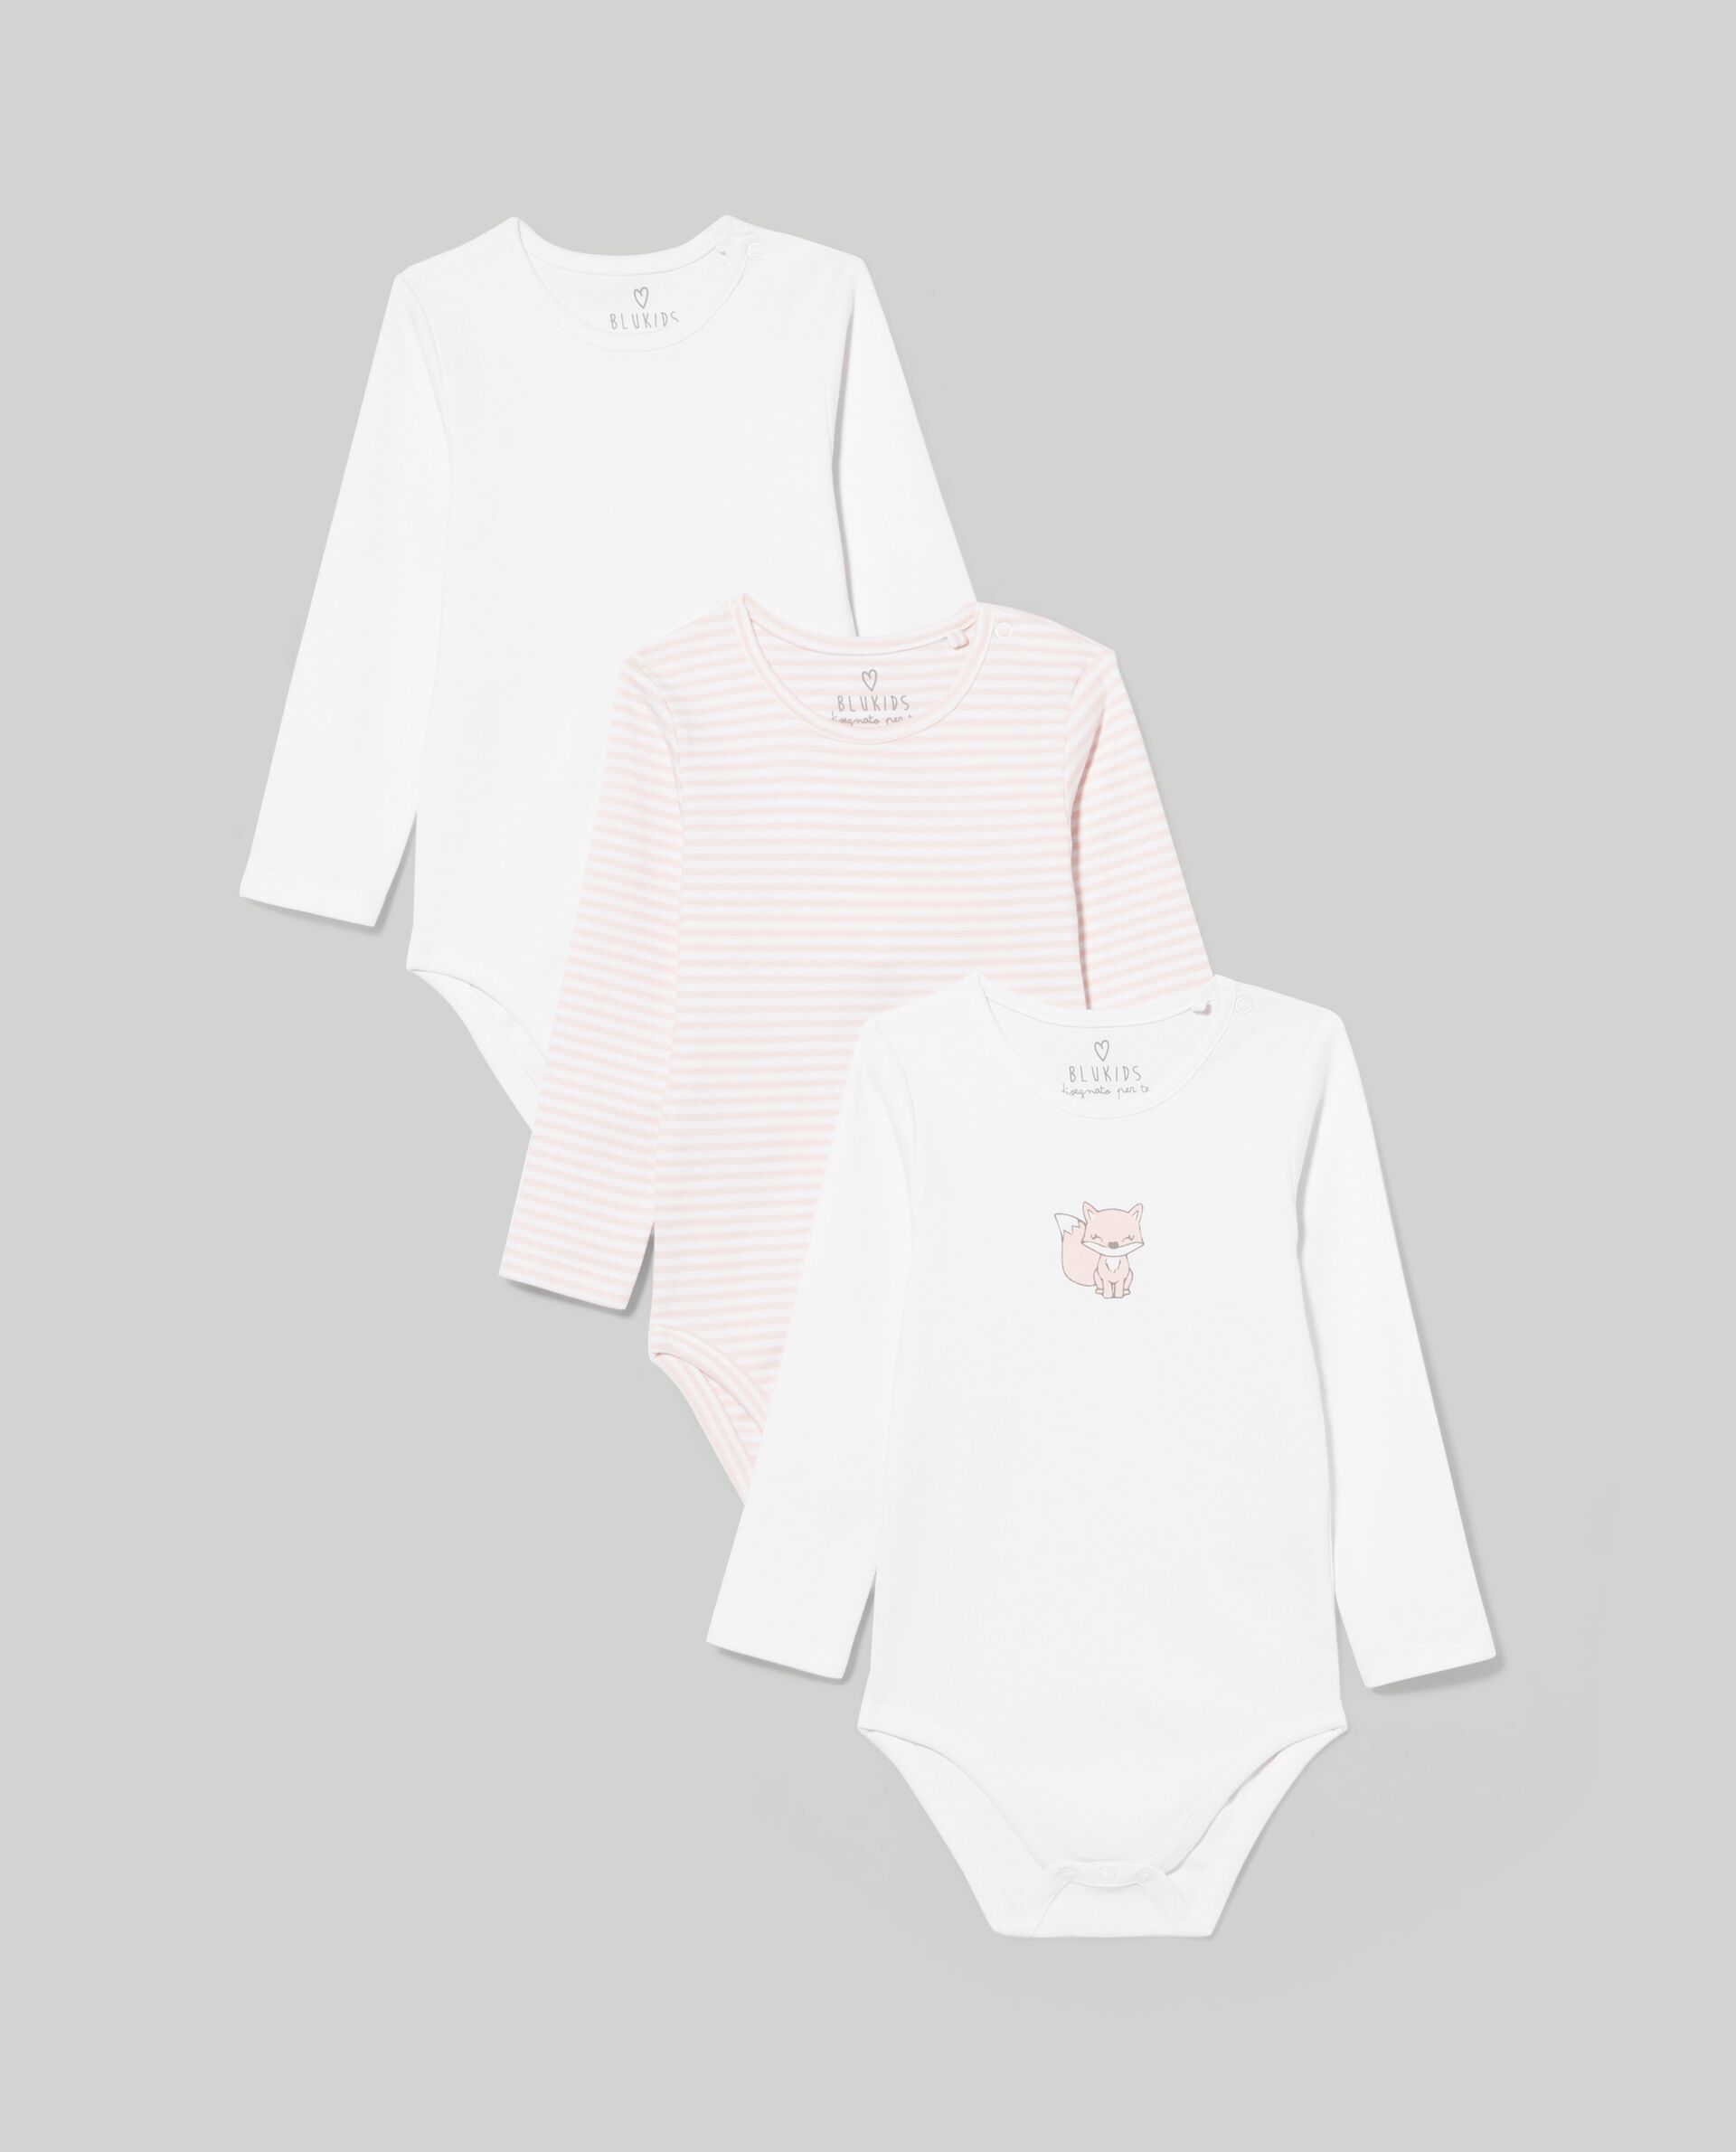 Набор из 3 боди с длинными рукавами для новорожденных., белый/розовый набор из 3 боди с длинными рукавами для новорожденных белый розовый